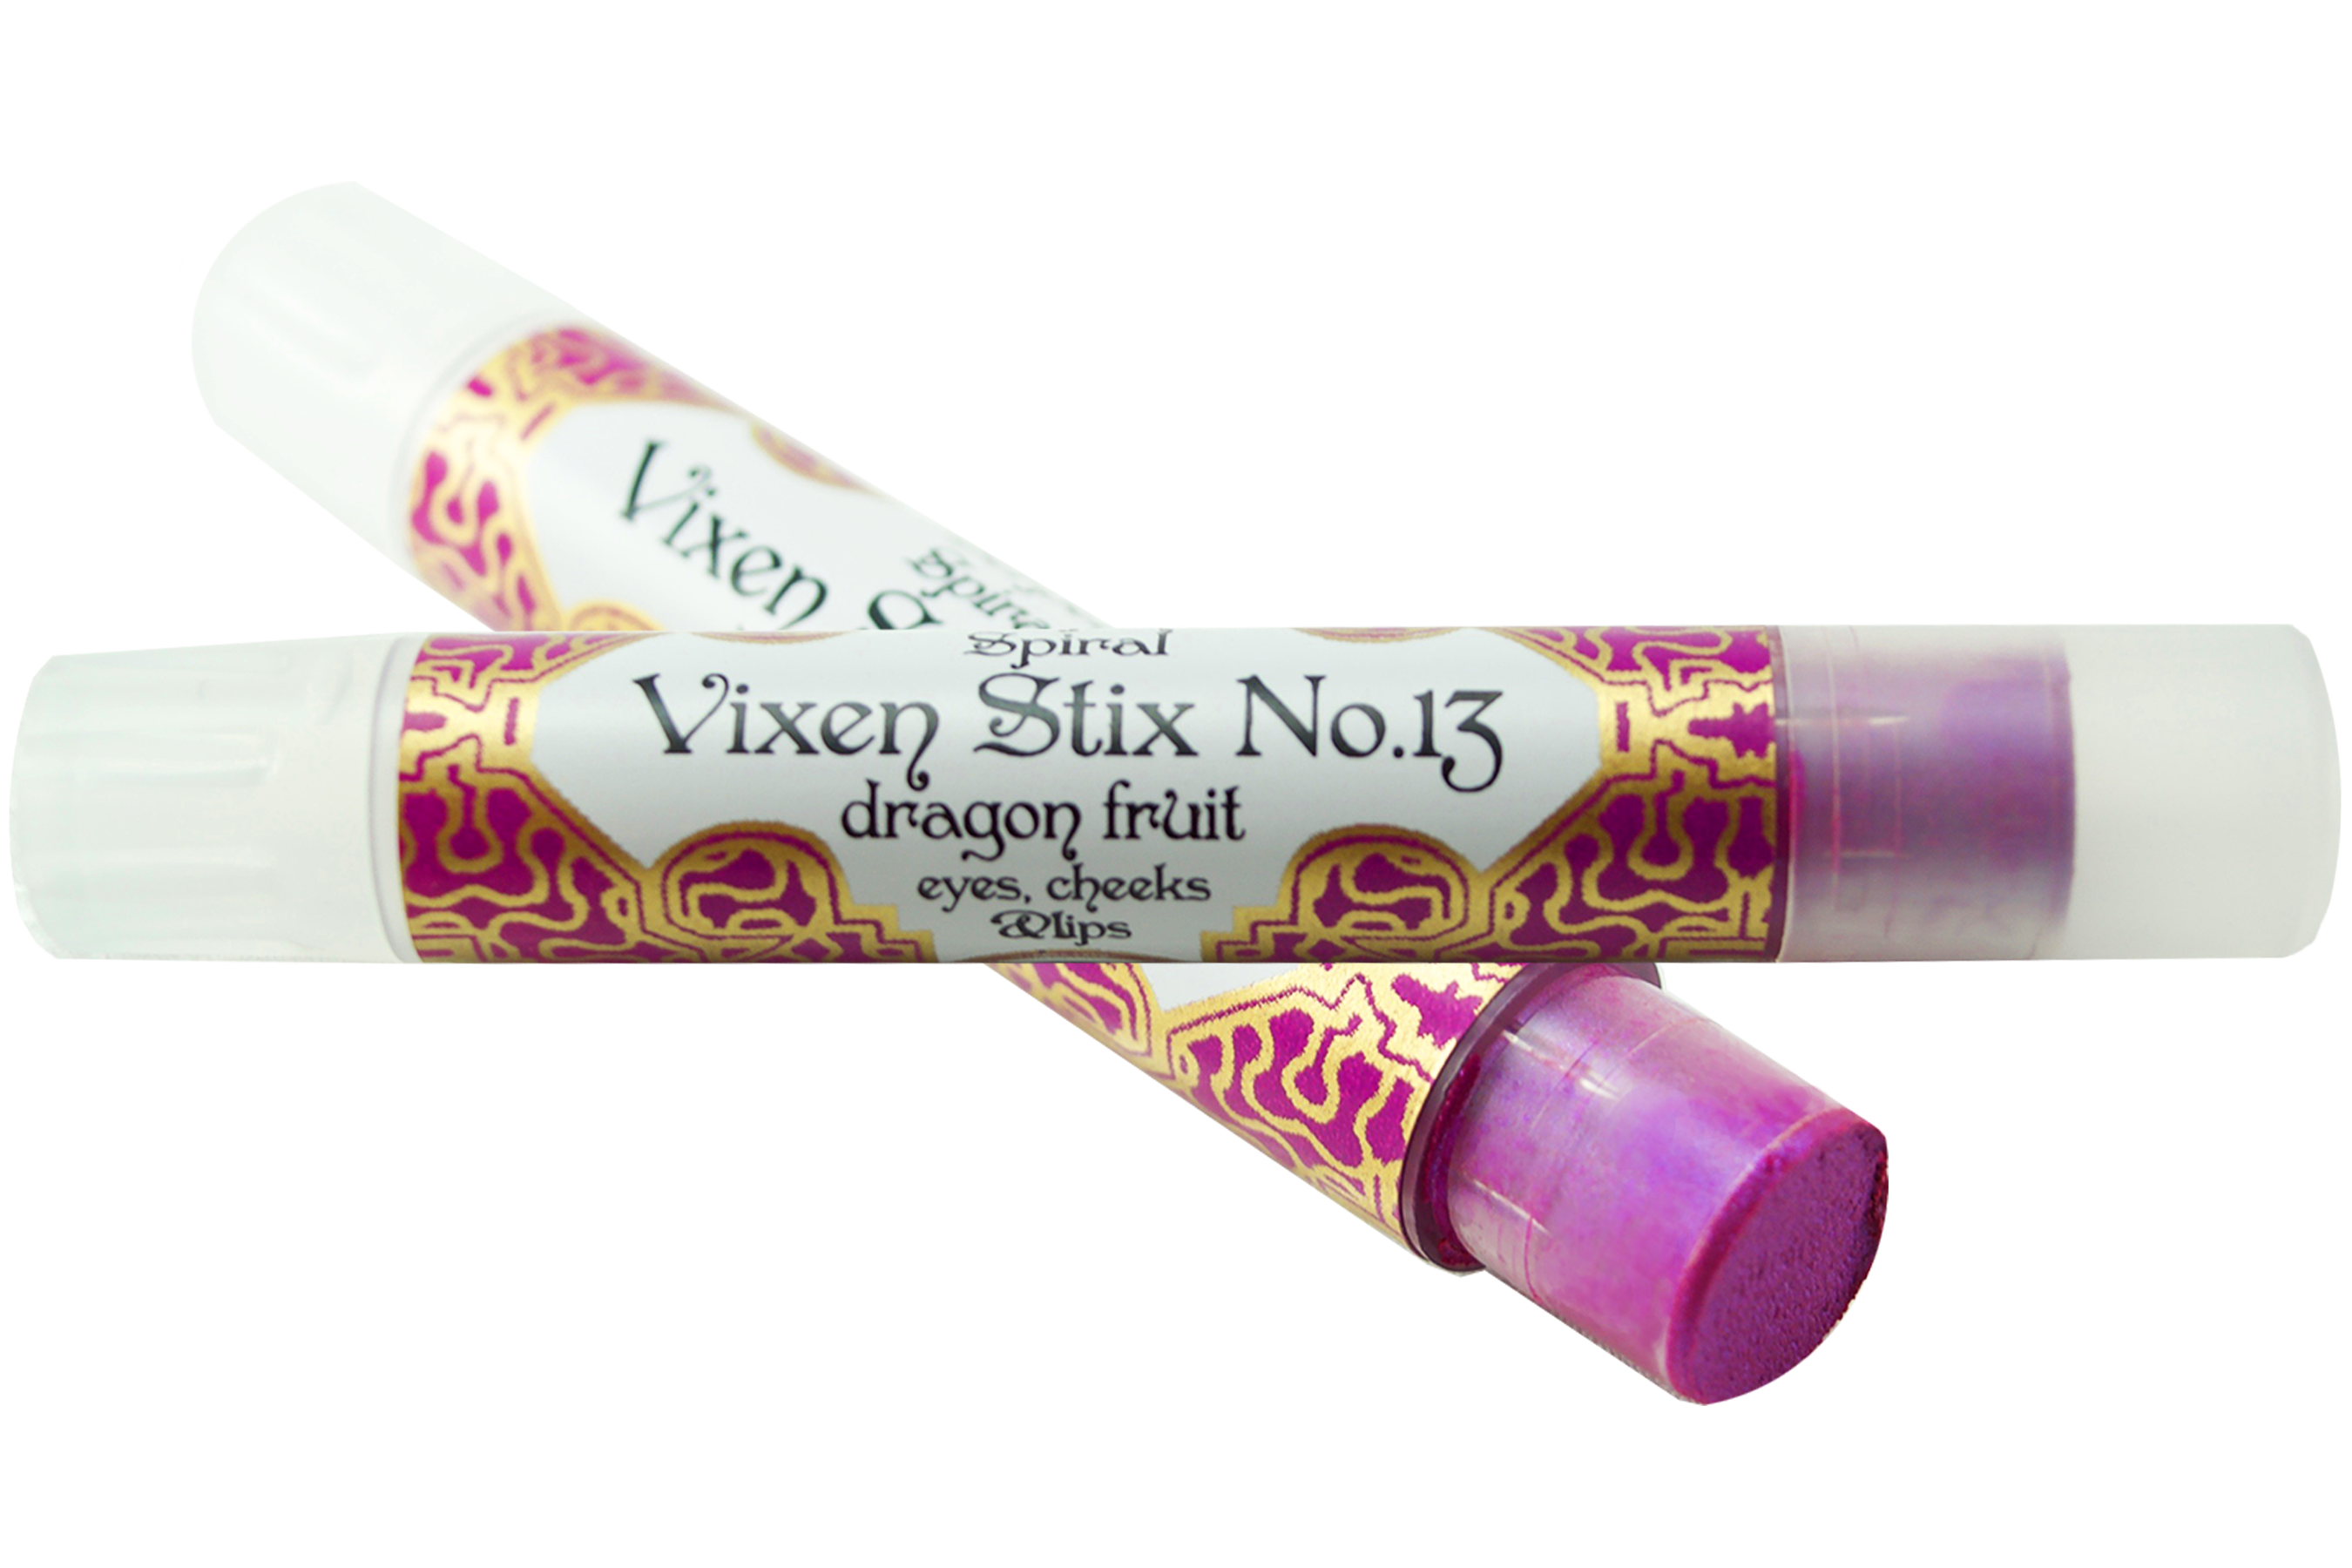 Vixen Stix No.13 ~ dragon fruit organic lip stick